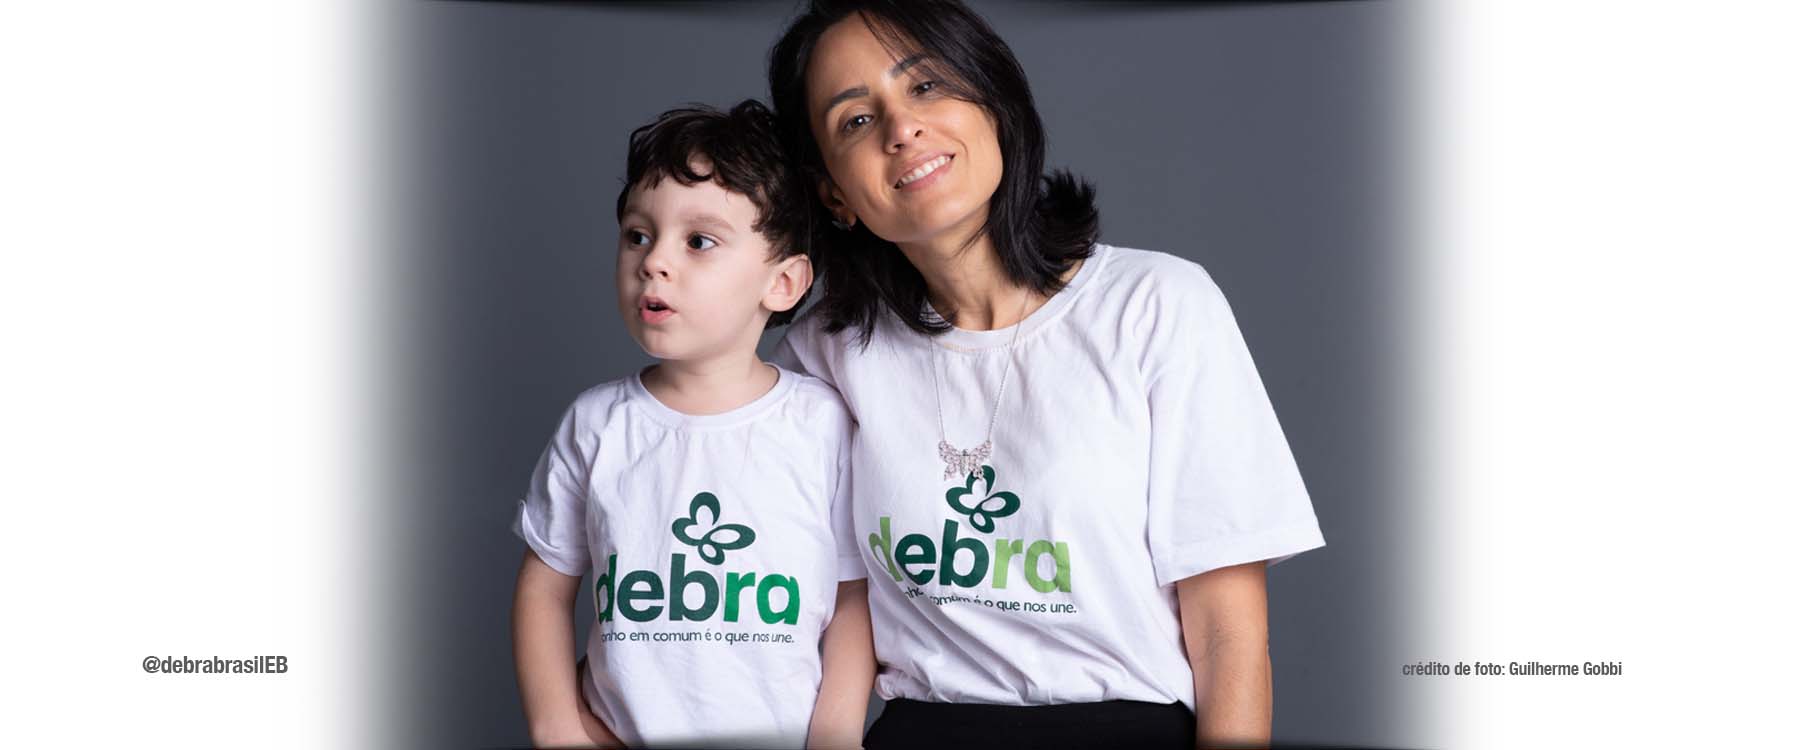 Dra. Rosalie Torrelio apresentadora do DEBRA Talks, programa de entrevistas sobre a epidermólise bolhosa (EB) com profissionais e a comunidade EB, ao lado do filho